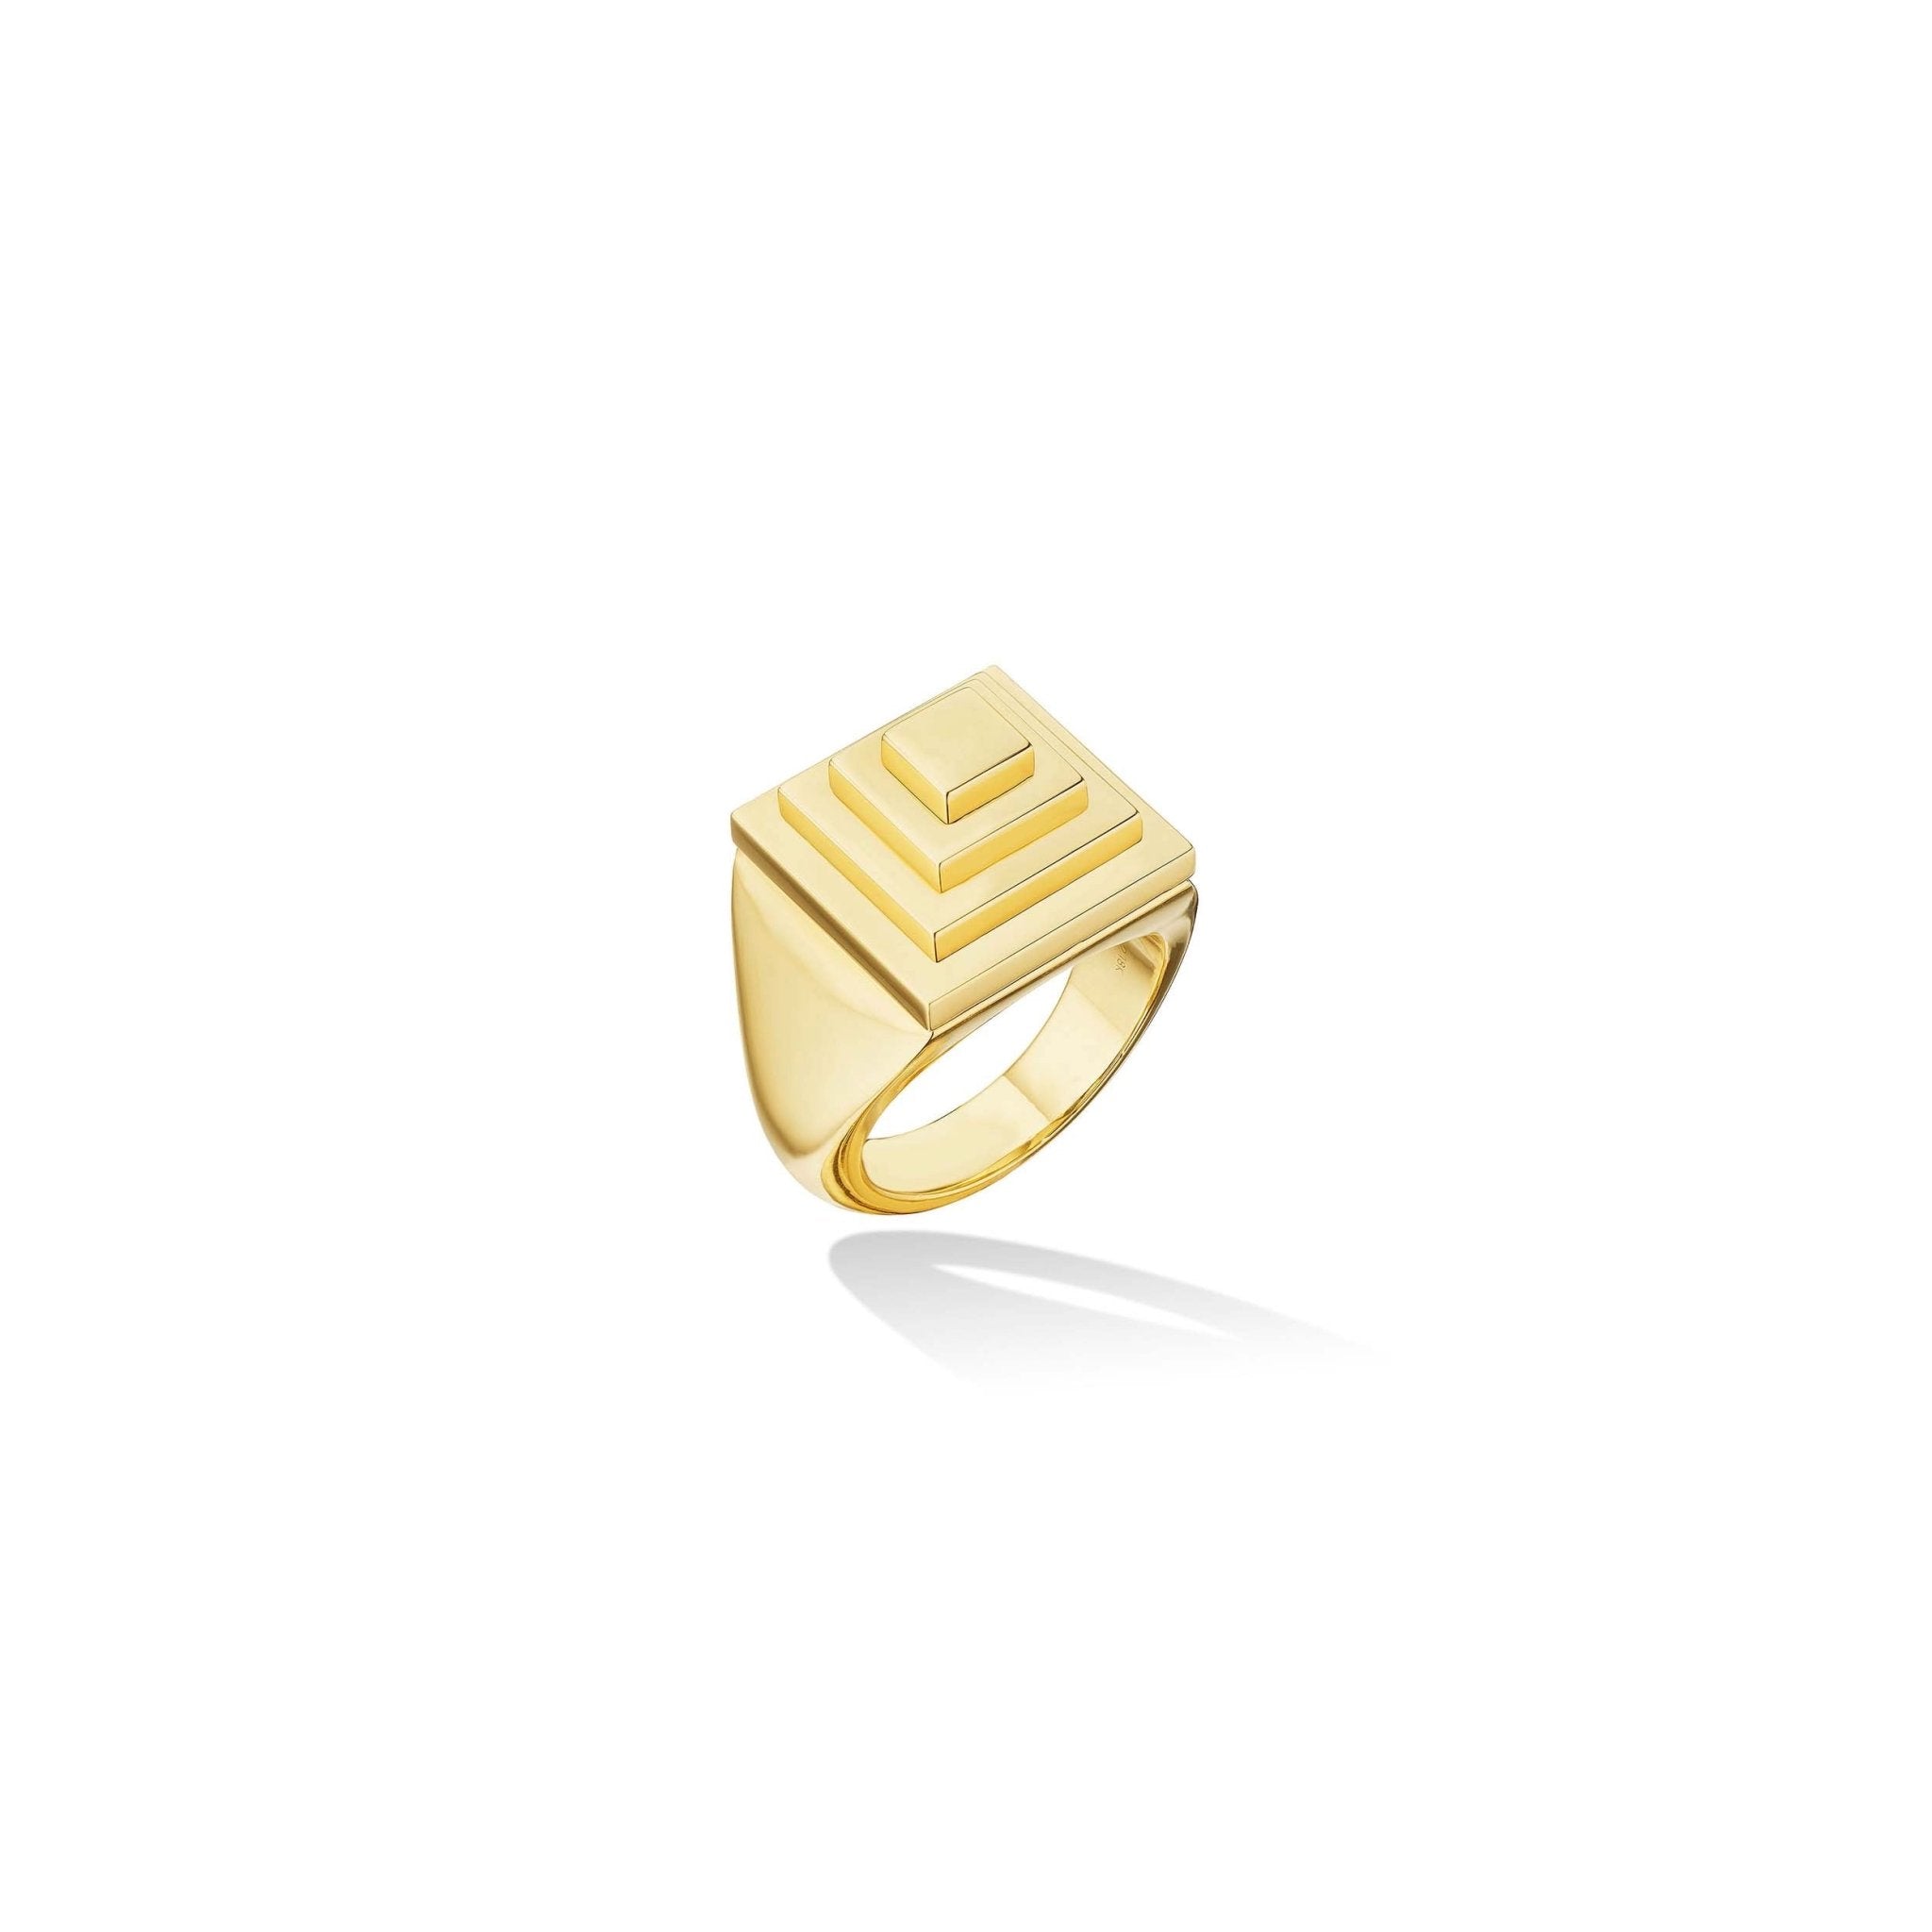 Kamushki 18kt yellow gold Shams signet ring